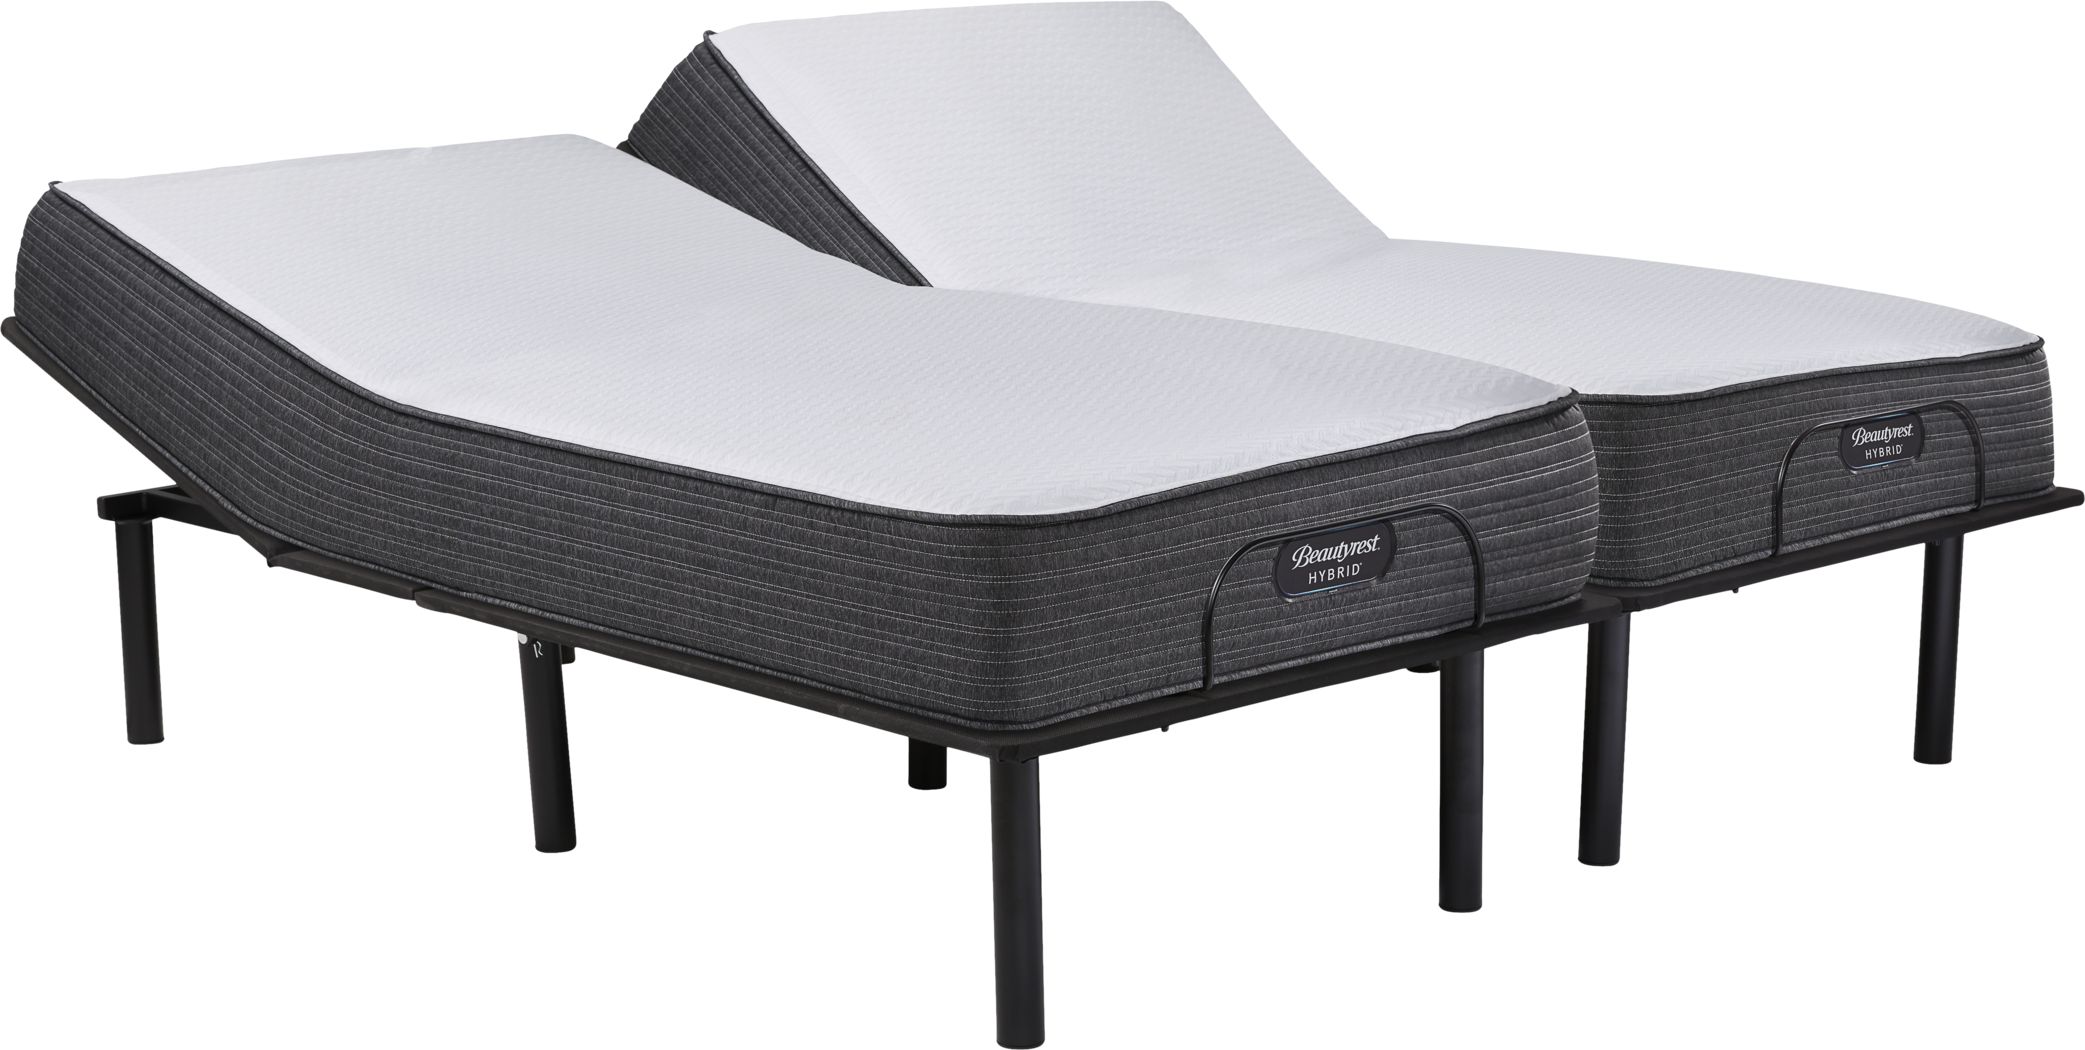 beautyrest hybrid belmont springs queen mattress reviews